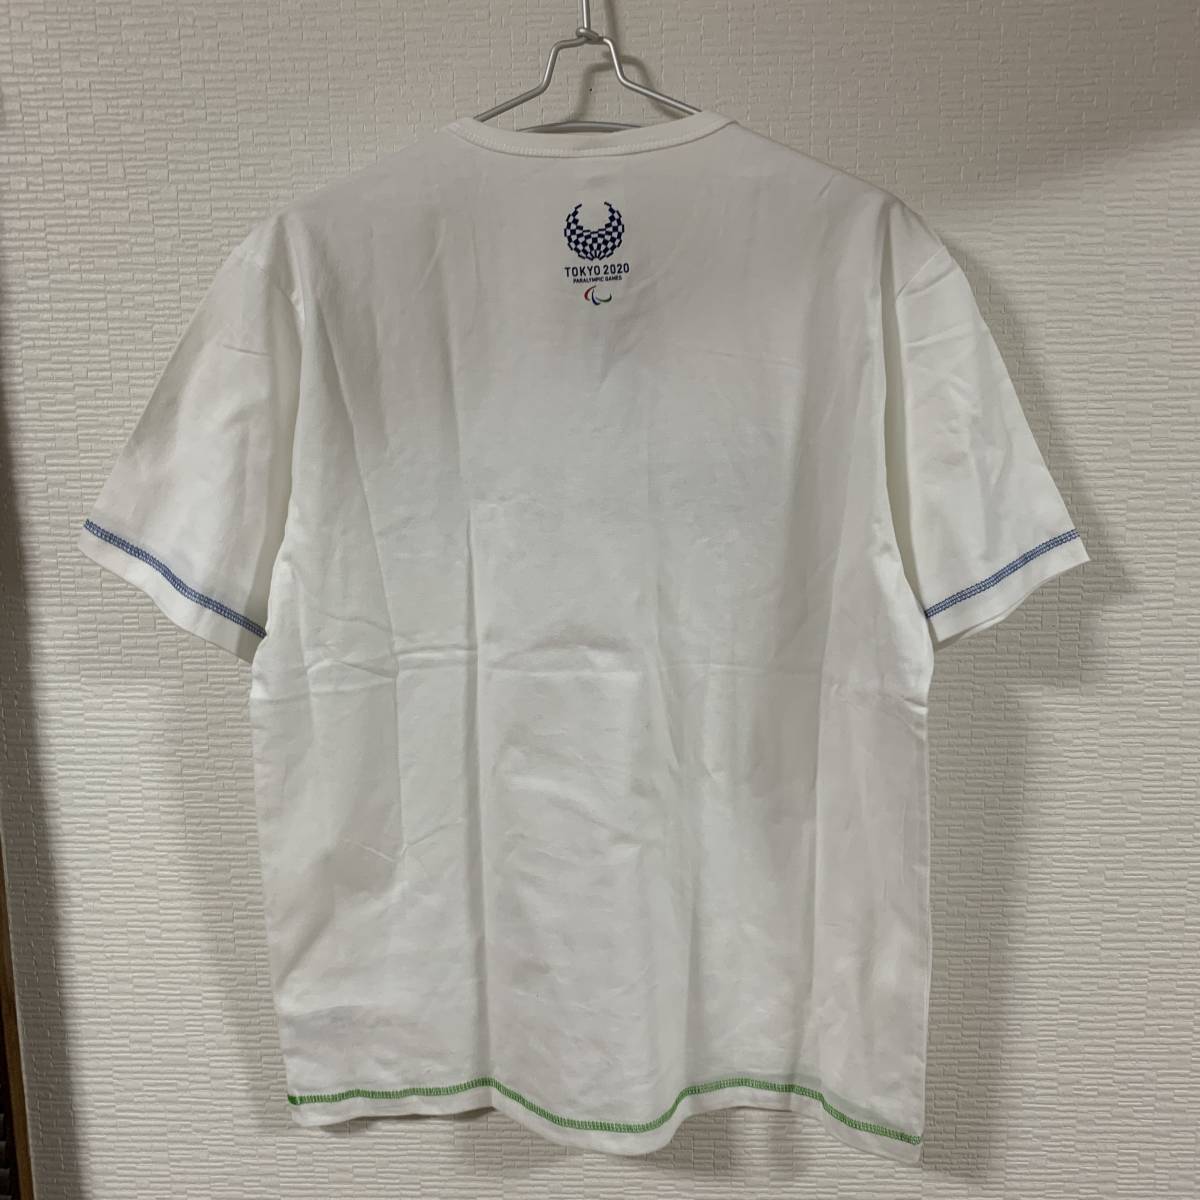 東京2020 東京オリンピック パラリンピック - TOKYP2020 公式ロゴTシャツ LLサイズ 公式ライセンス商品 販売終了 (タグ付き新品未着用)_画像4